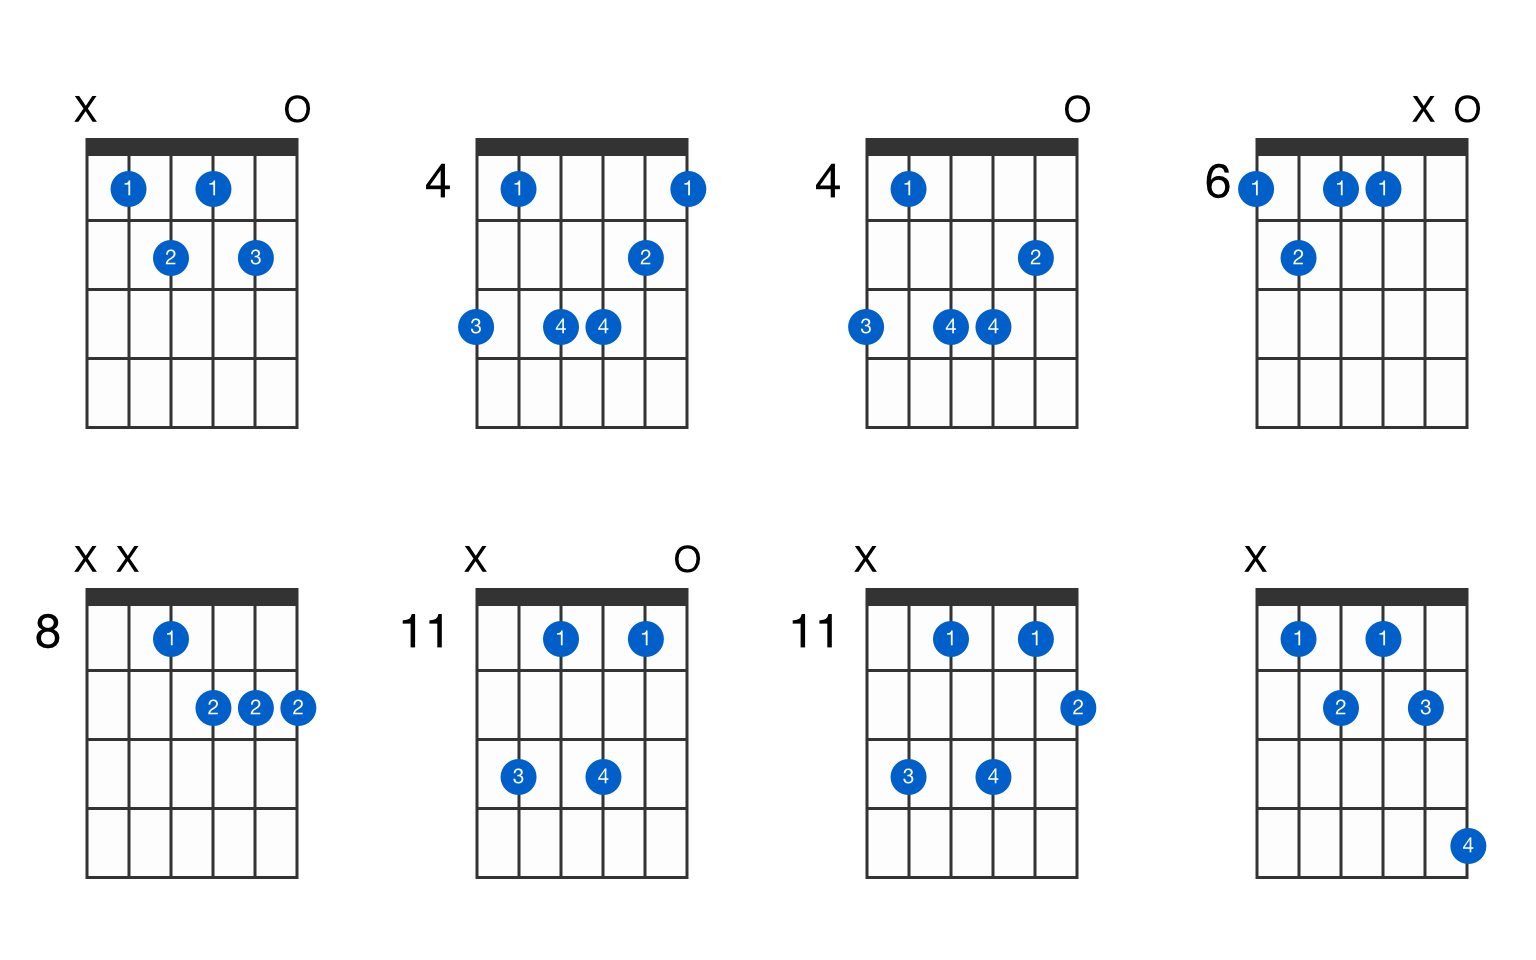 b flat 7 chord